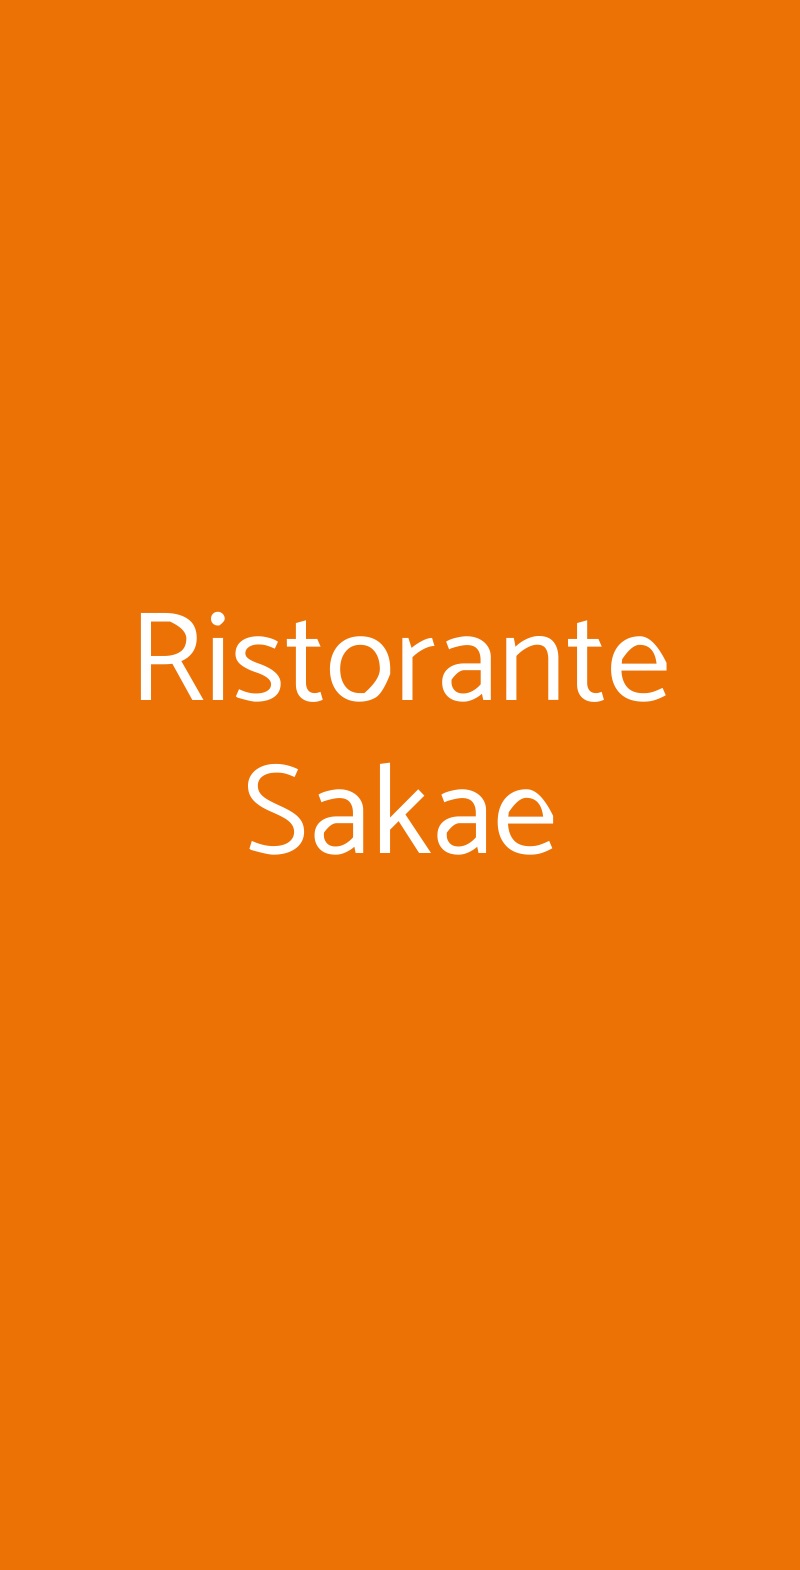 Ristorante Sakae Milano menù 1 pagina